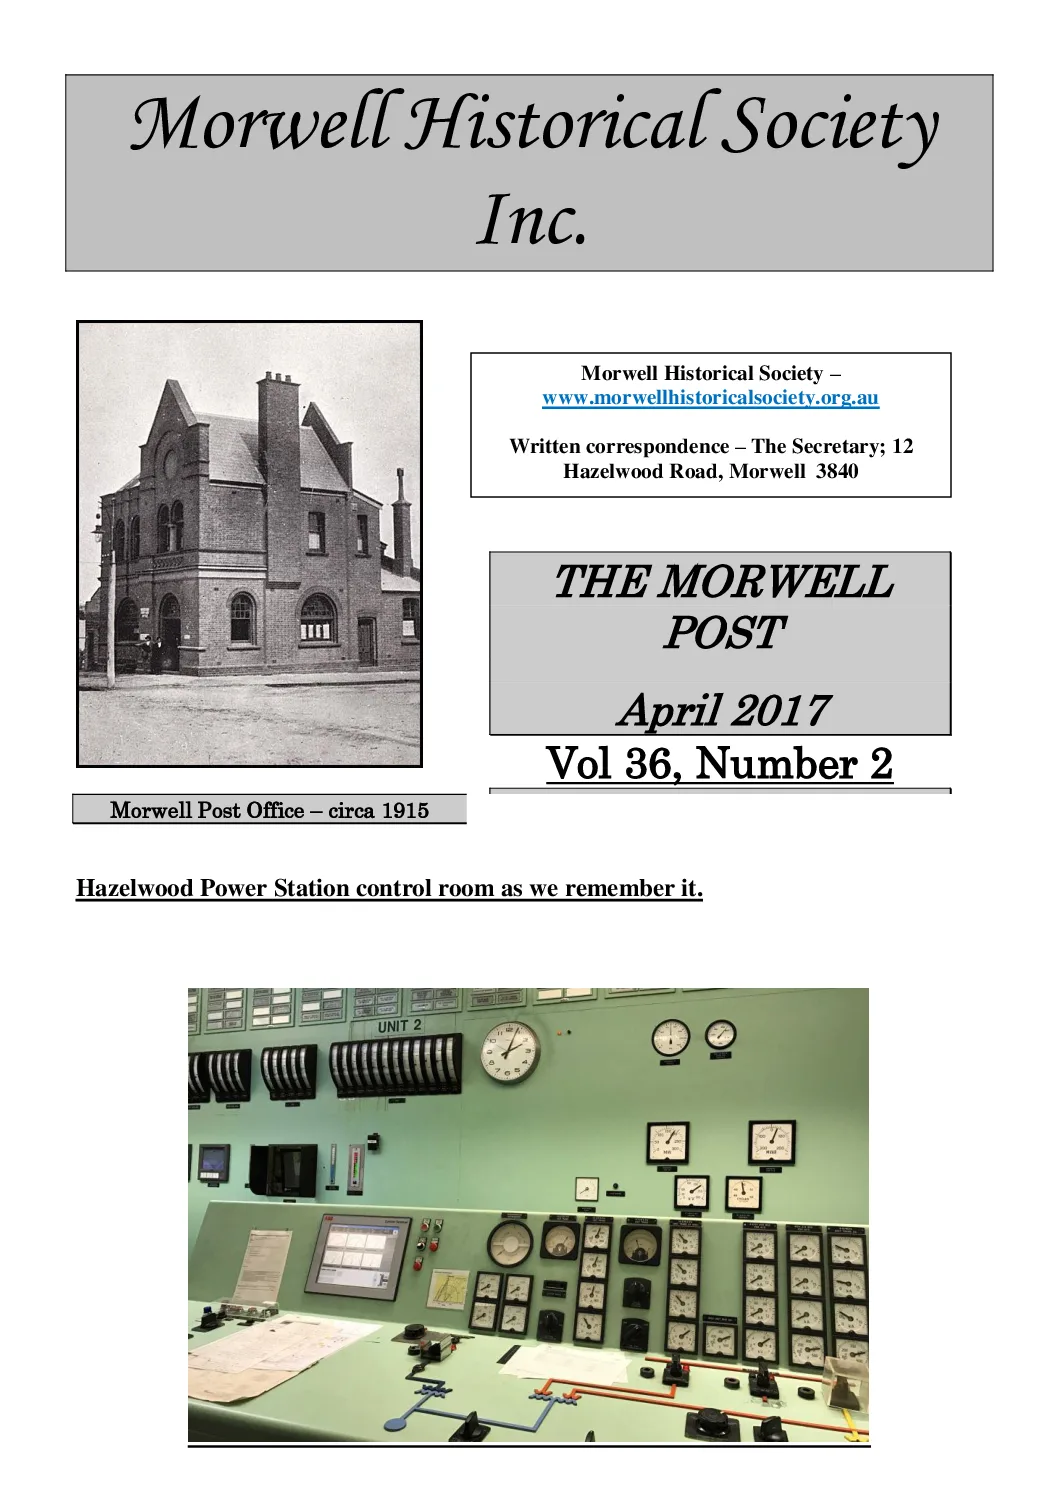 Newsletter April 2017